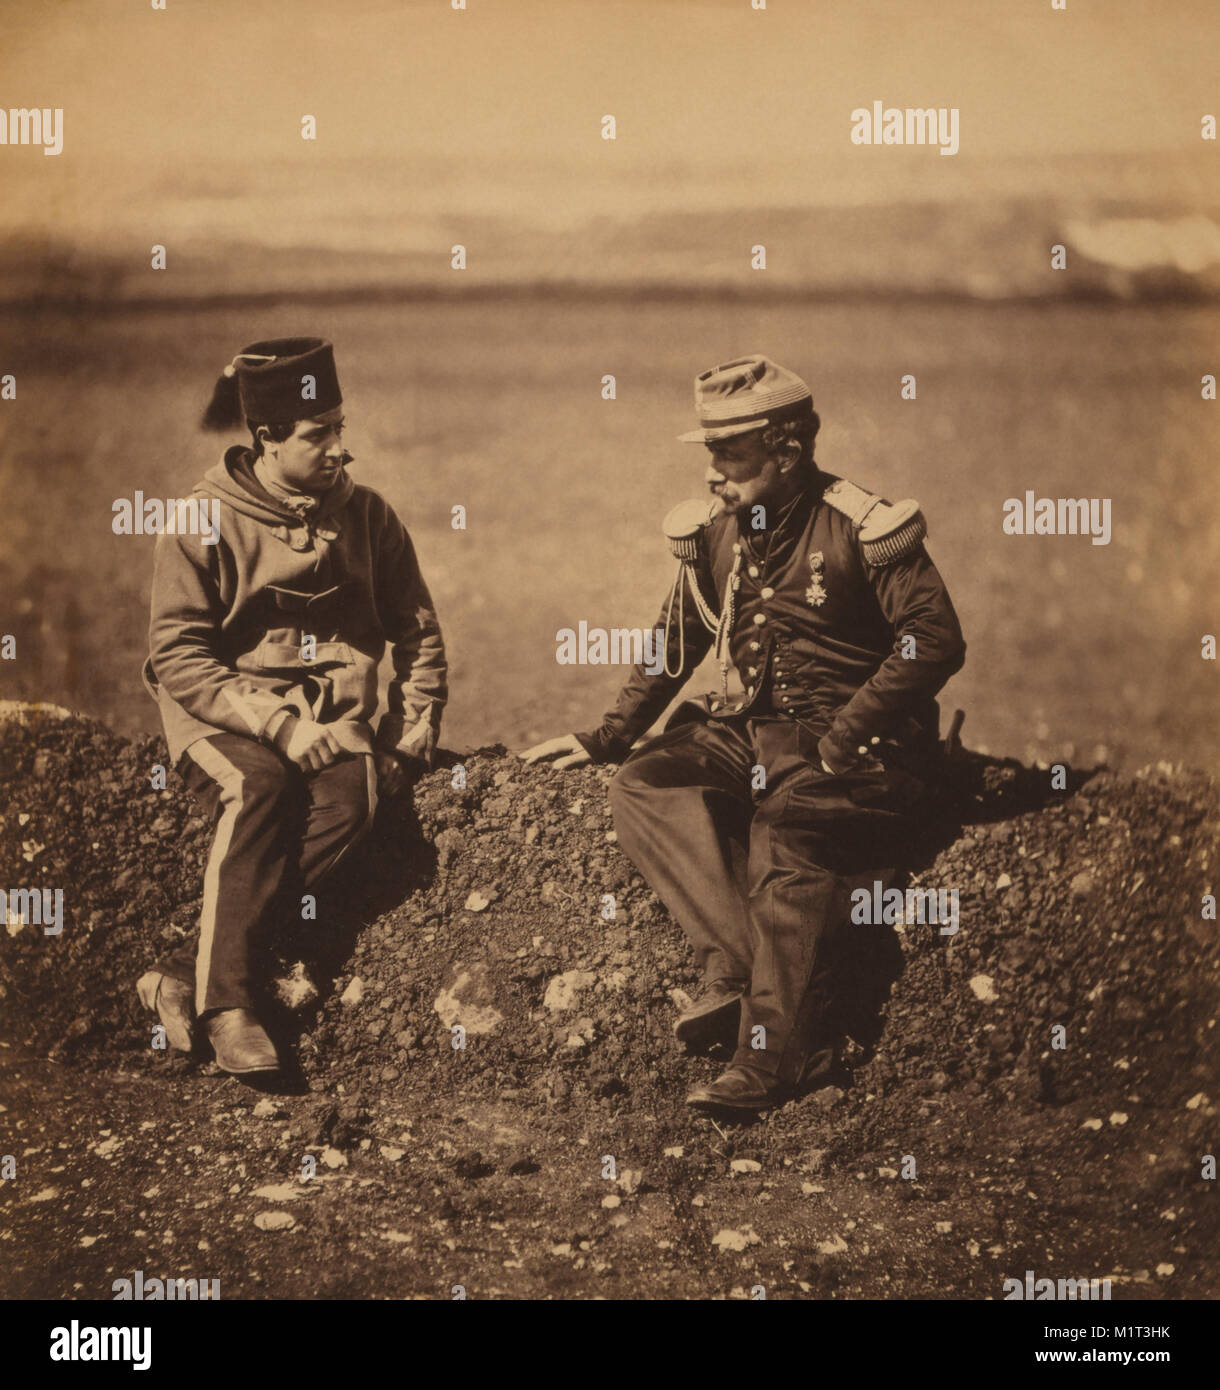 French General Cissé, Chief-of-Staff to General Pierre Bosquet, & Aide-de-Camp, Portrait during Crimean War, Crimea, Ukraine, by Roger Fenton, 1855 Stock Photo